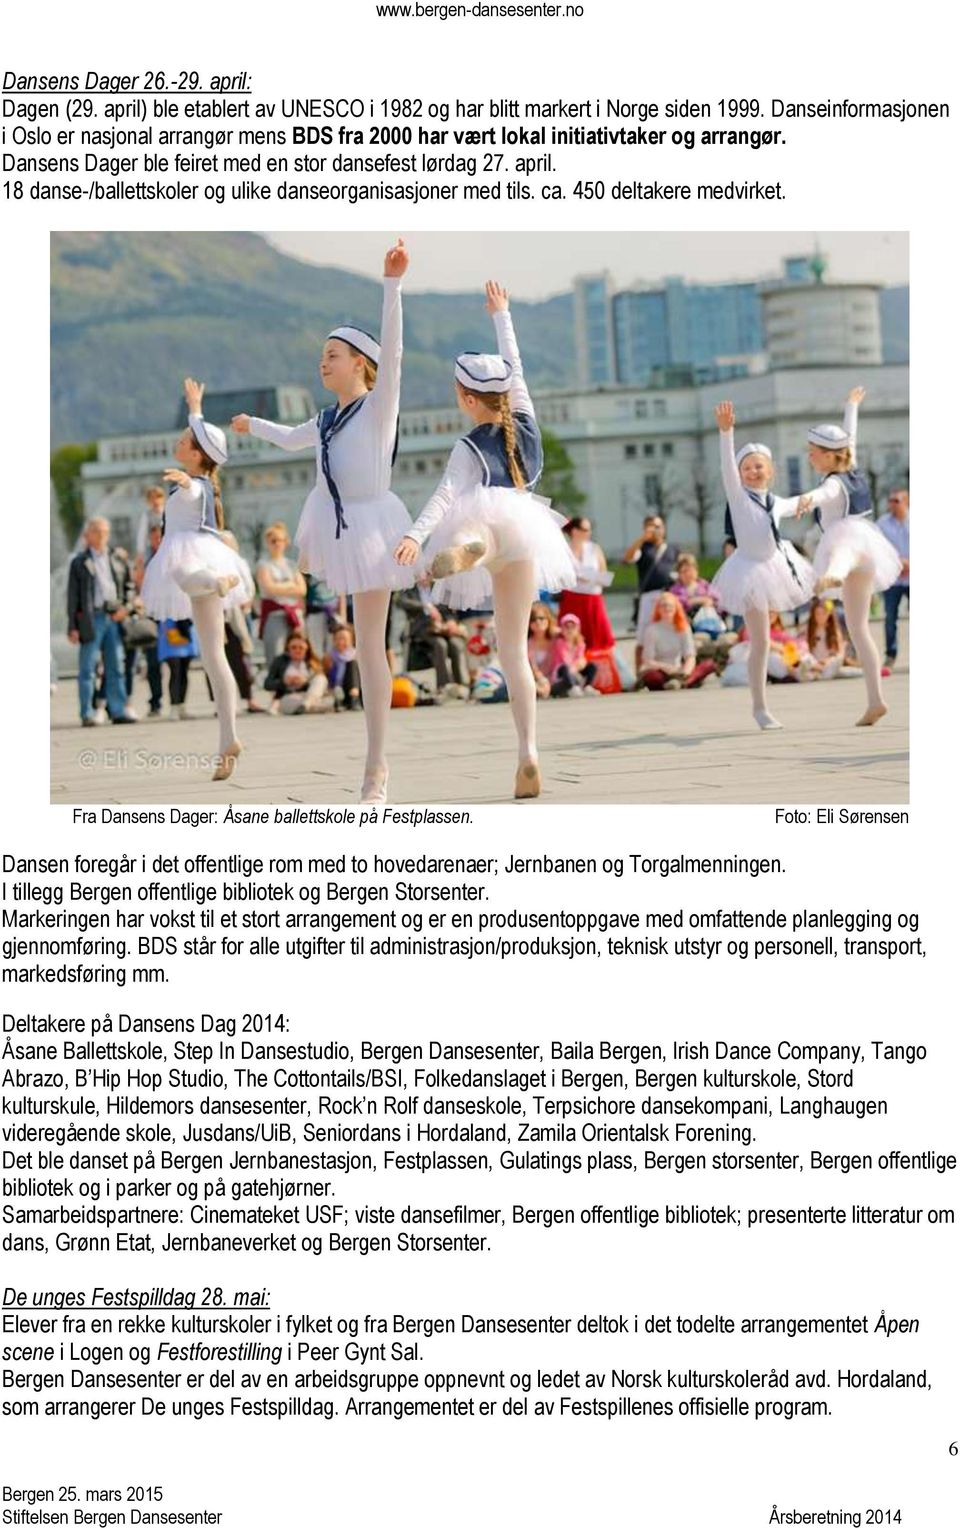 18 danse-/ballettskoler og ulike danseorganisasjoner med tils. ca. 450 deltakere medvirket. Fra Dansens Dager: Åsane ballettskole på Festplassen.